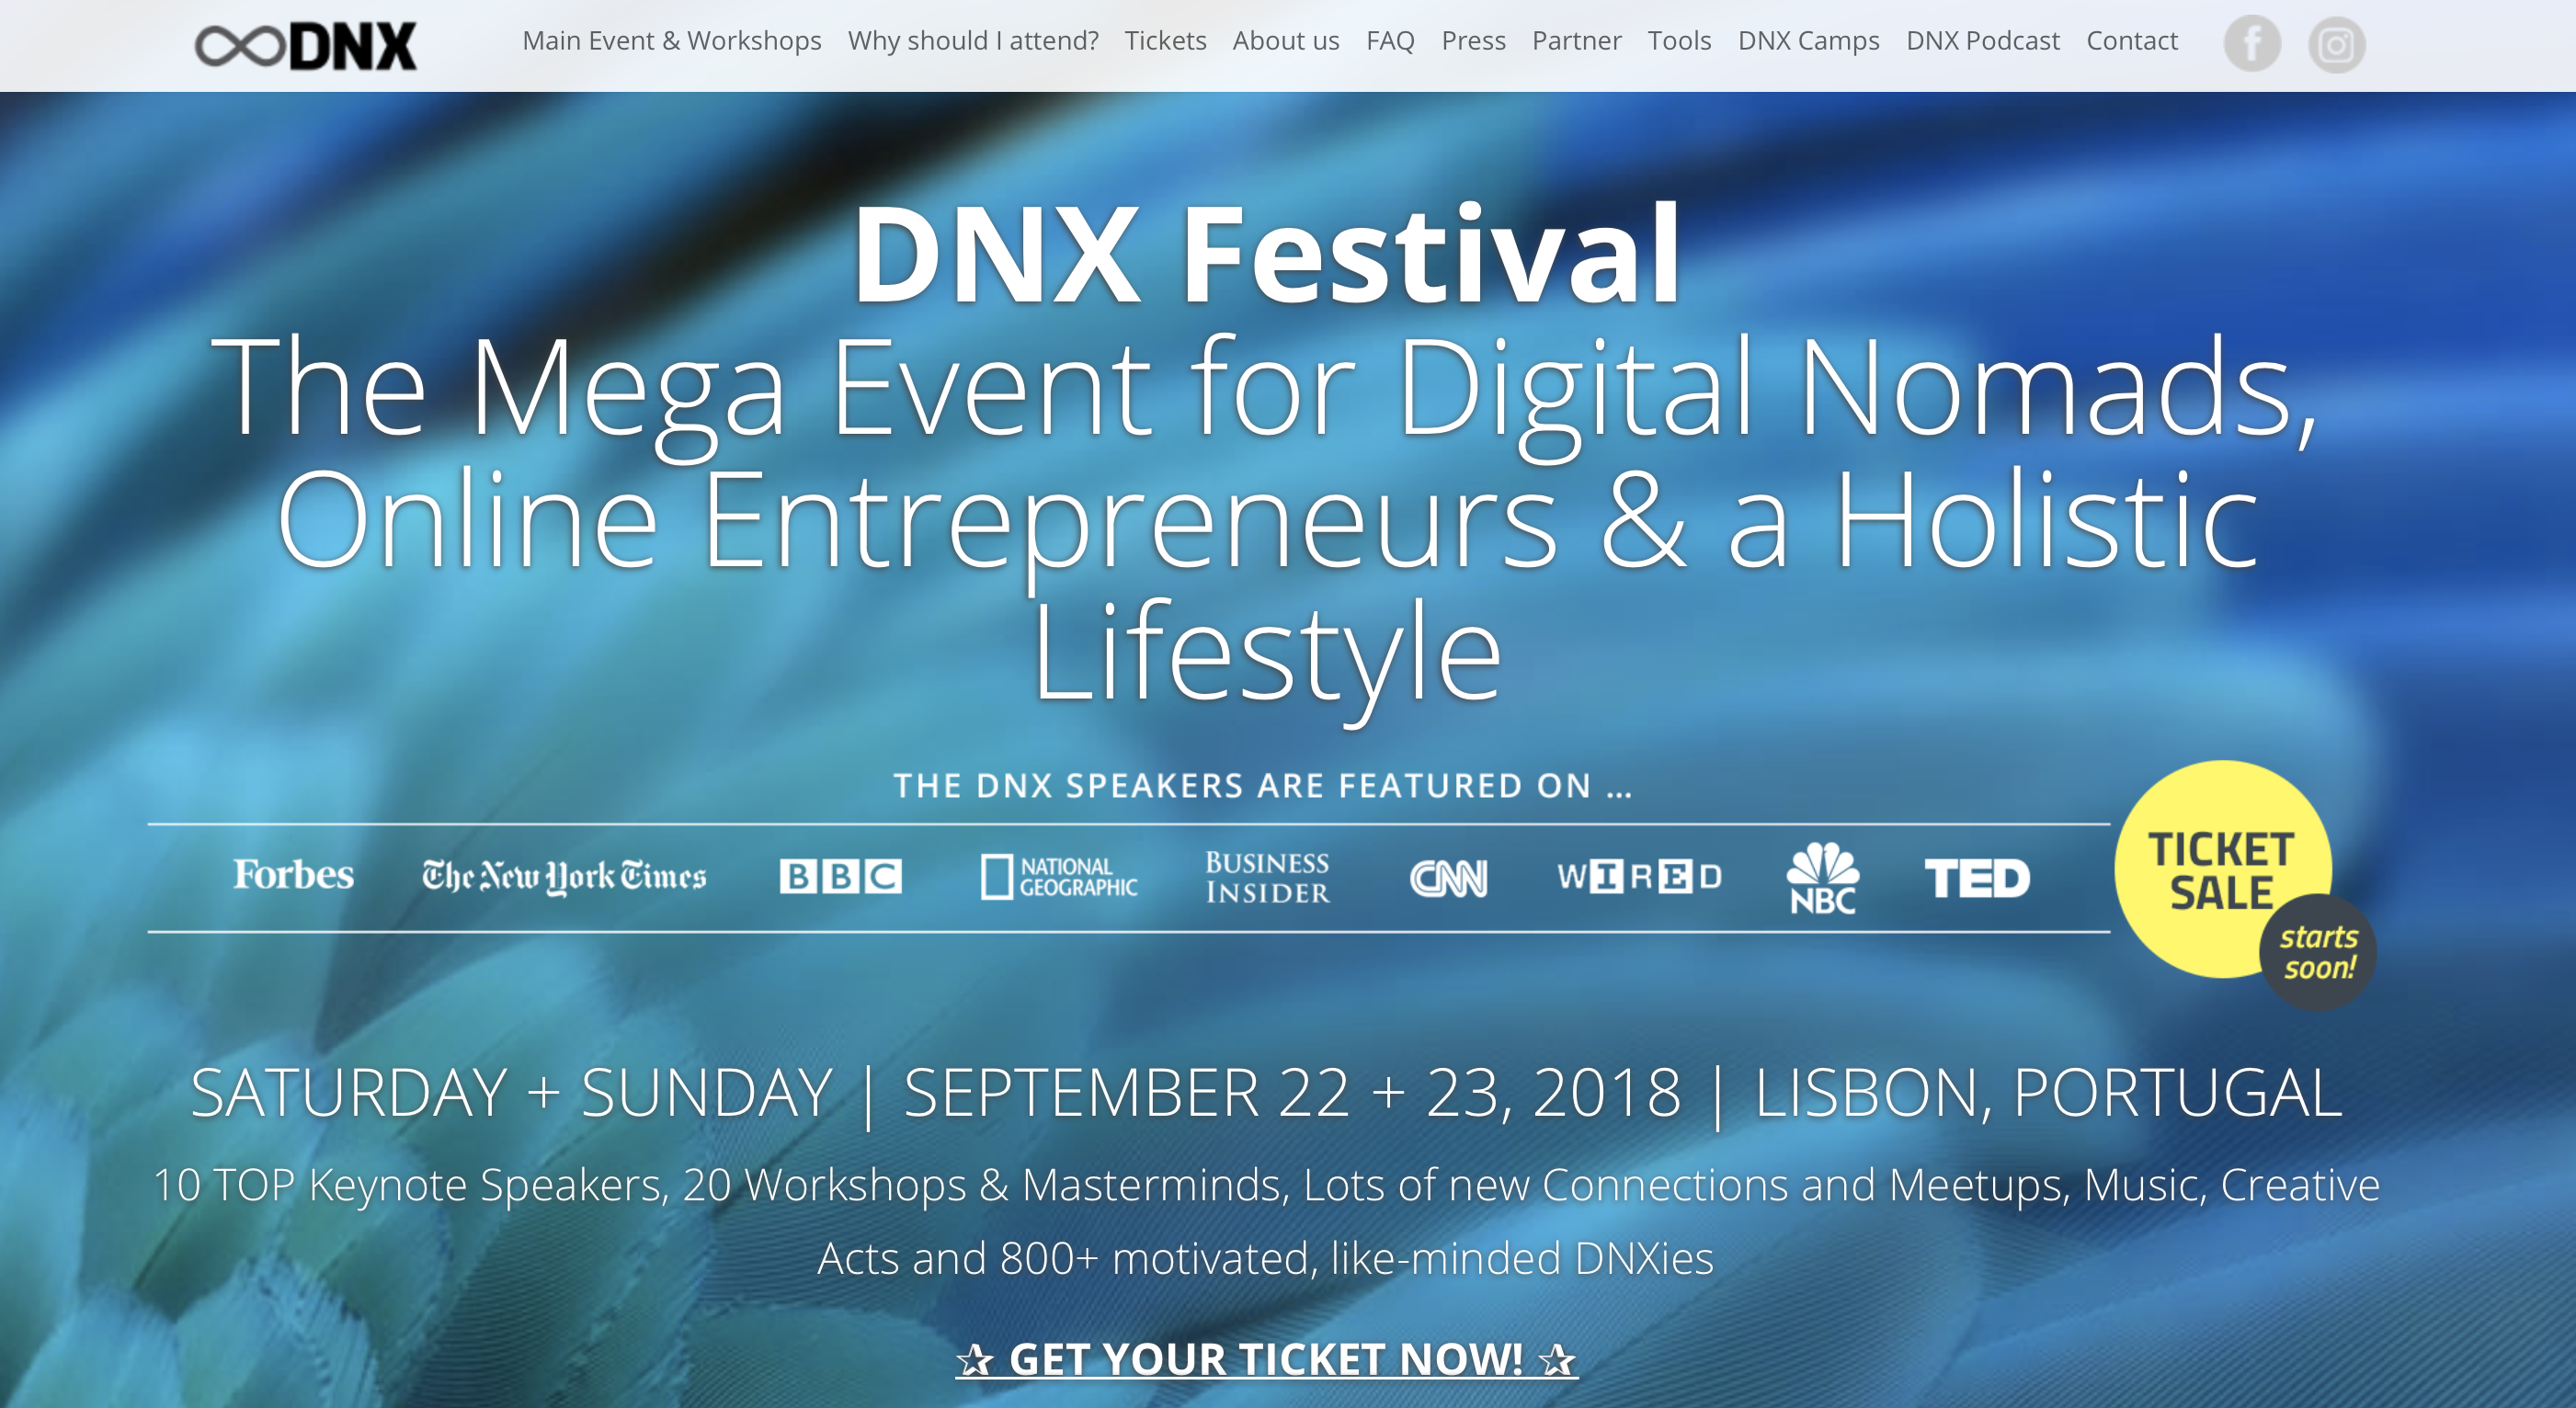 (c) Dnxfestival.com